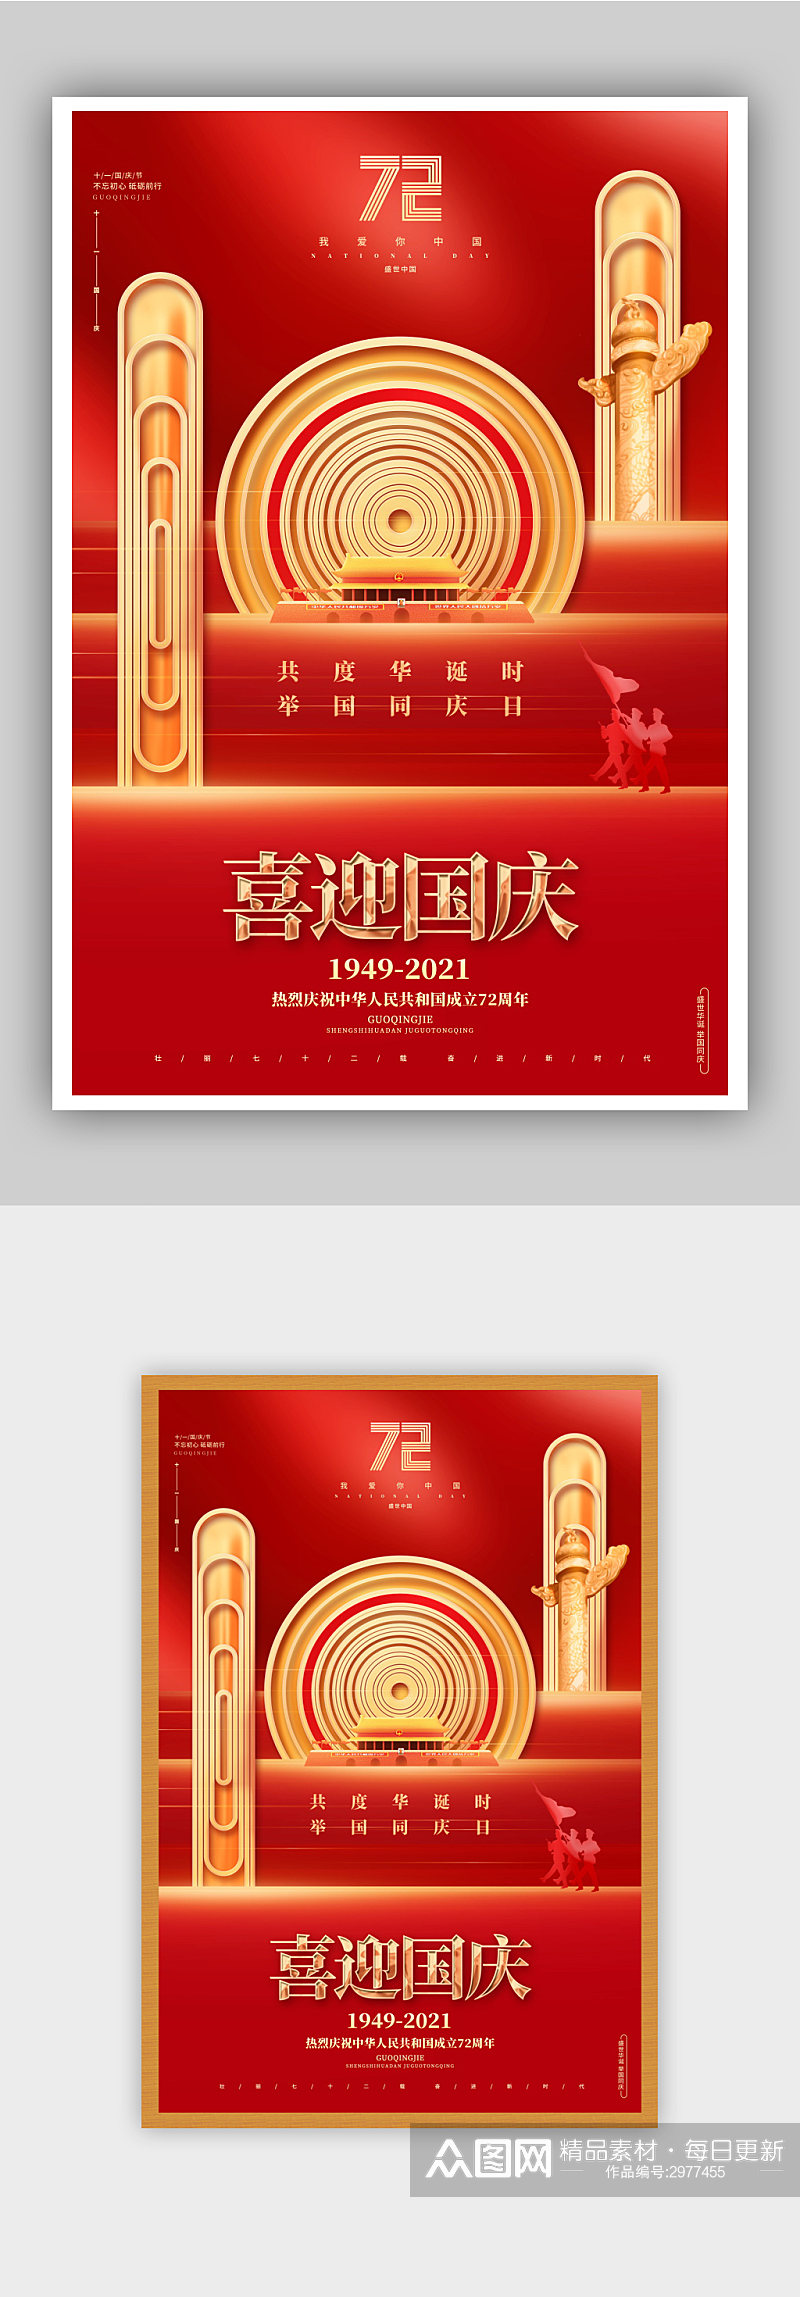 高端国庆节建国72周年宣传海报素材